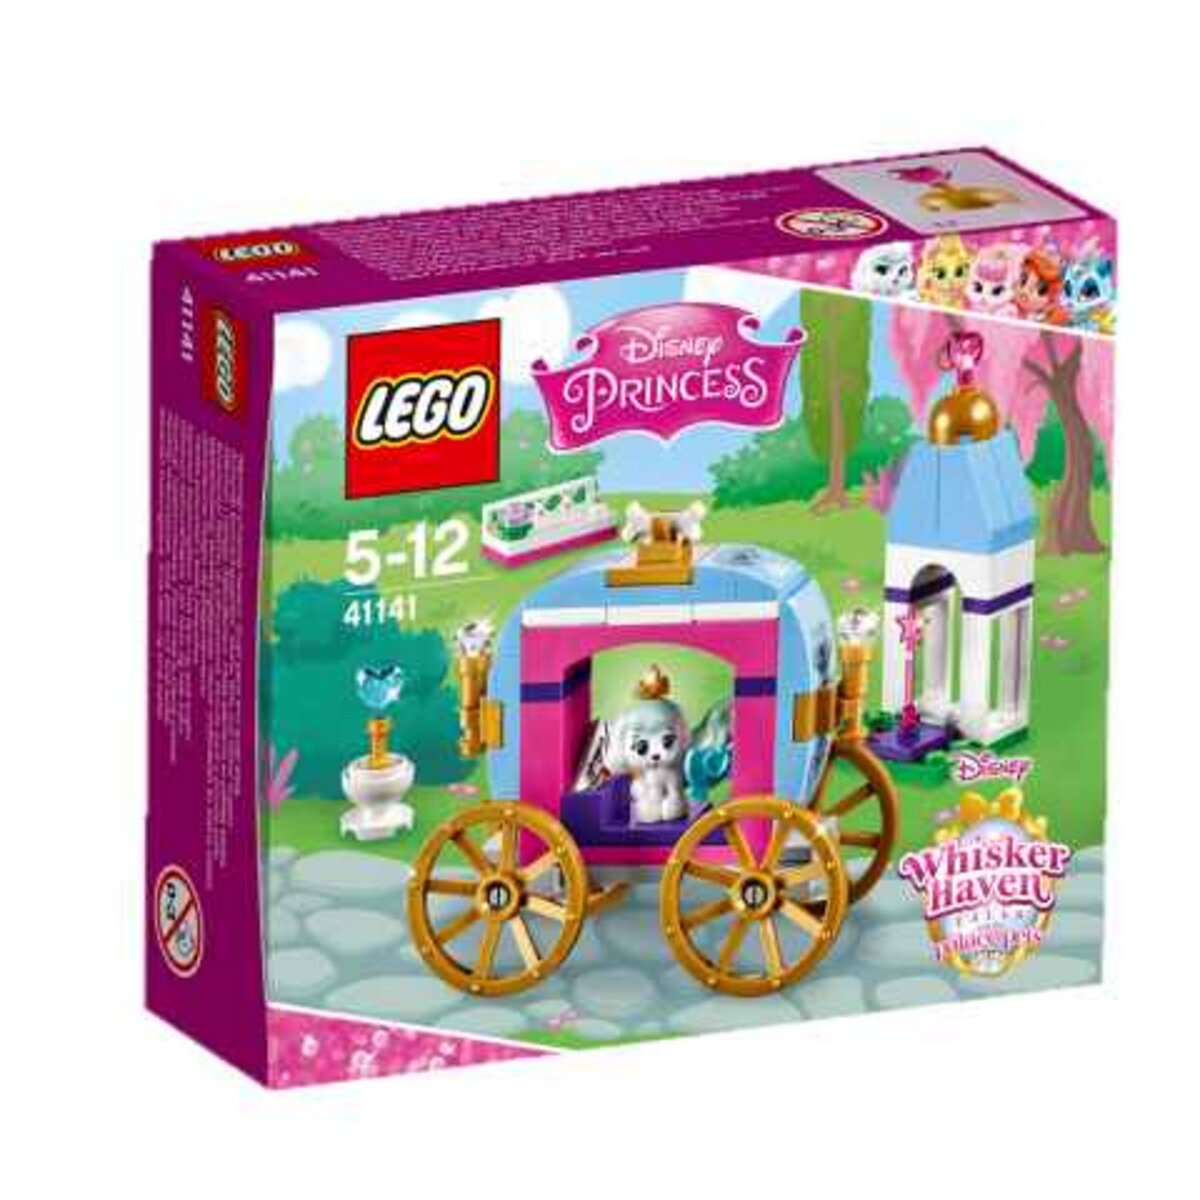 LEGO Duplo Disney Princess 41141 - Le carrosse royal de Ballerine